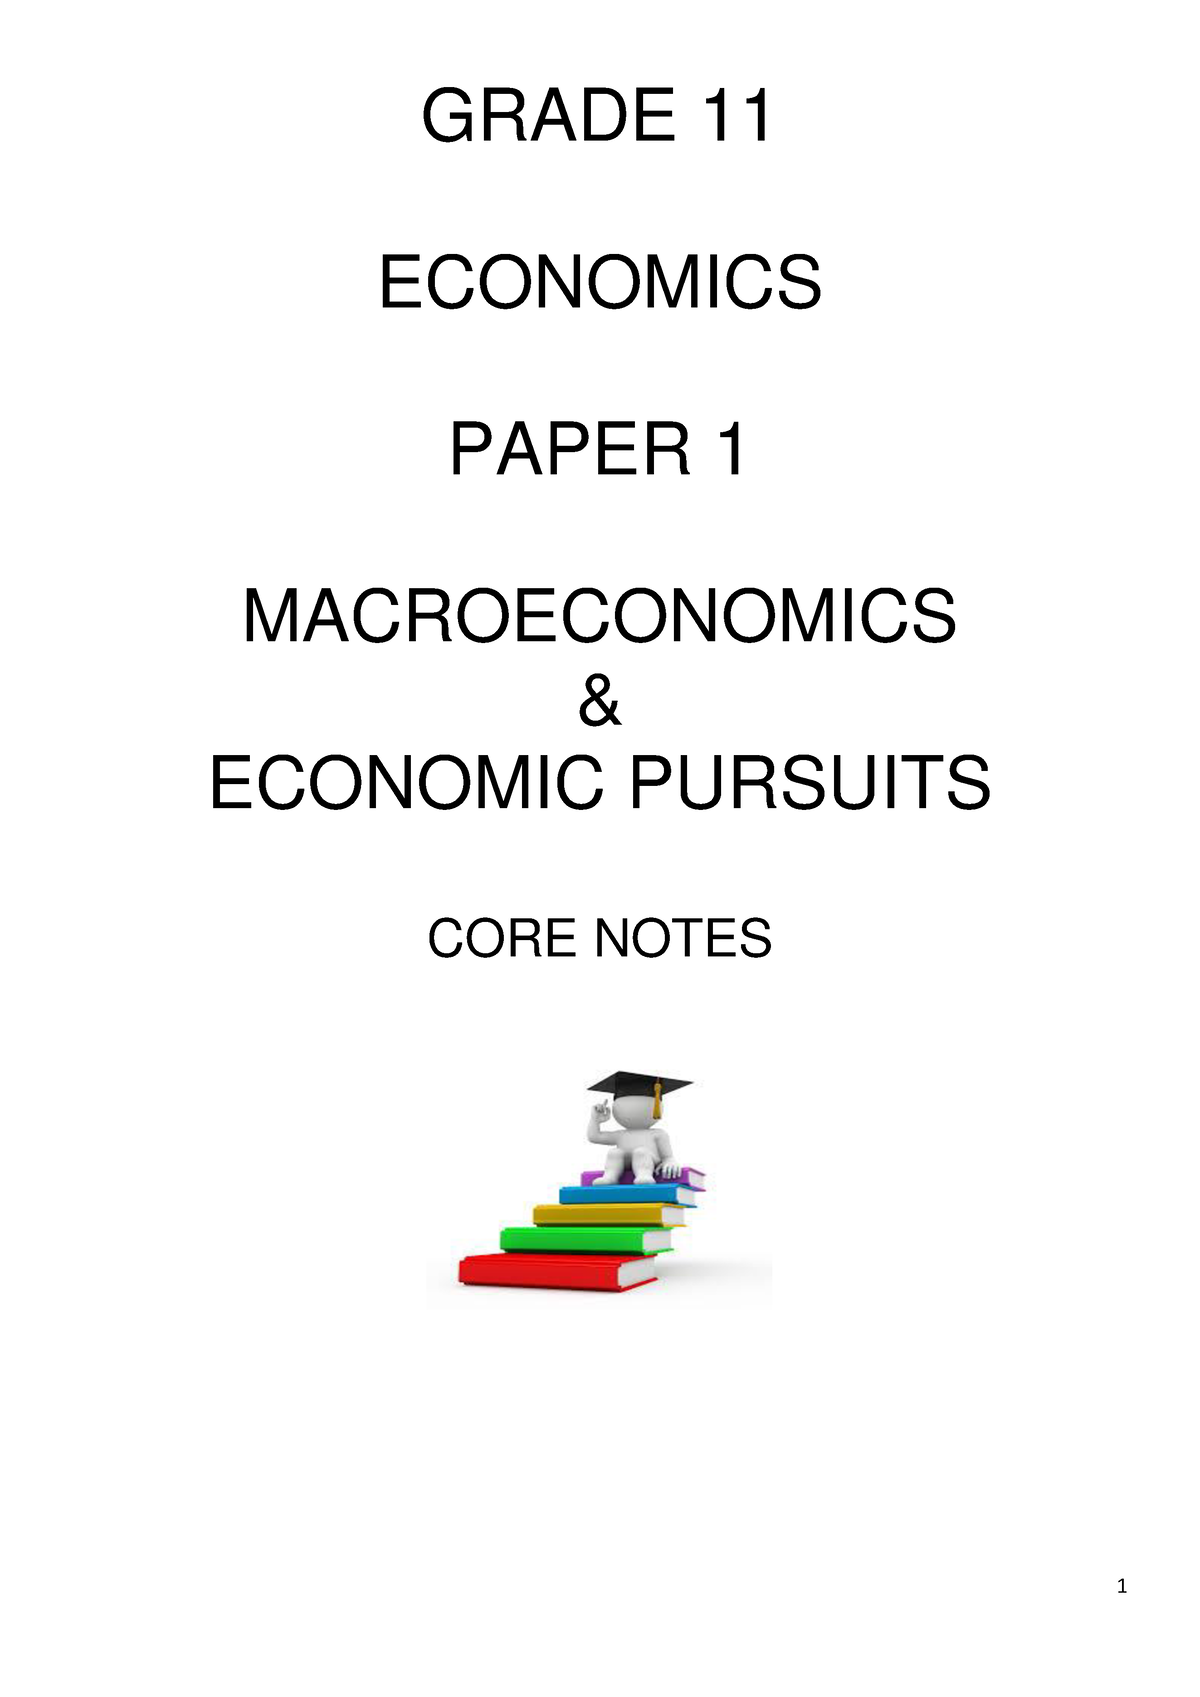 economics essay grade 11 term 3